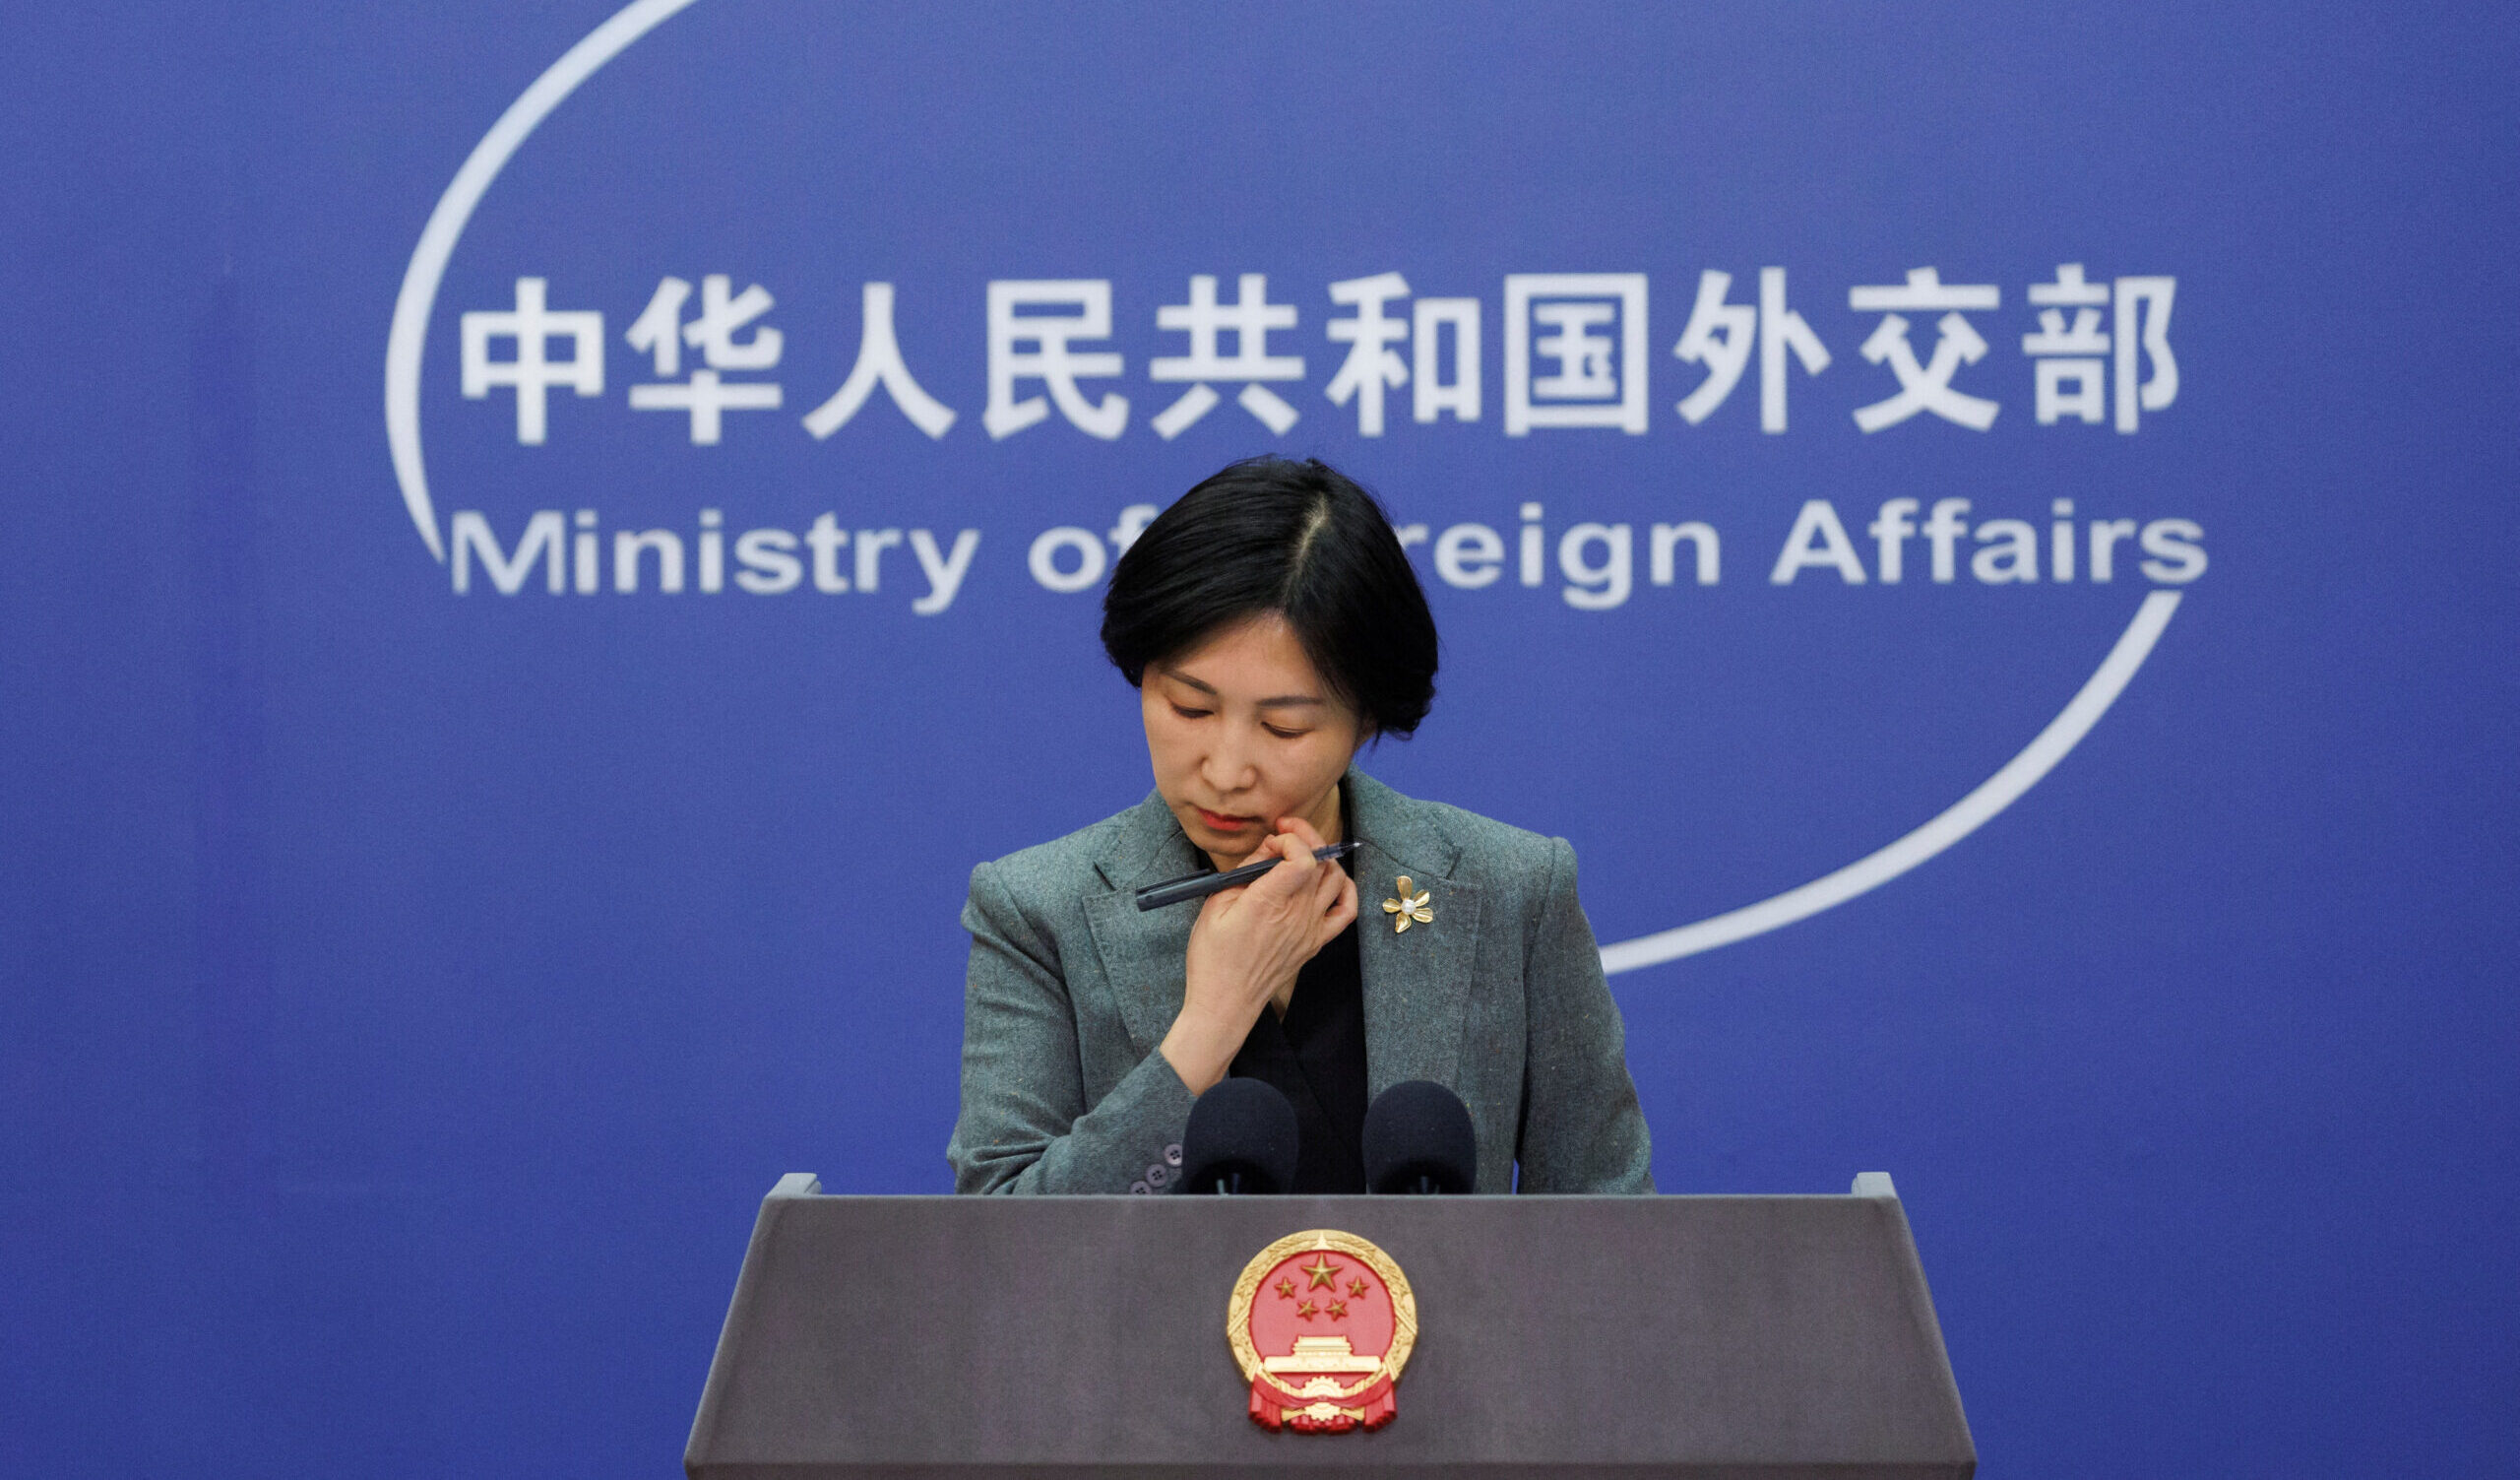 La Cina ferma le polemiche: "Rispettiamo lo stato di sovranità delle ex repubbliche sovietiche"